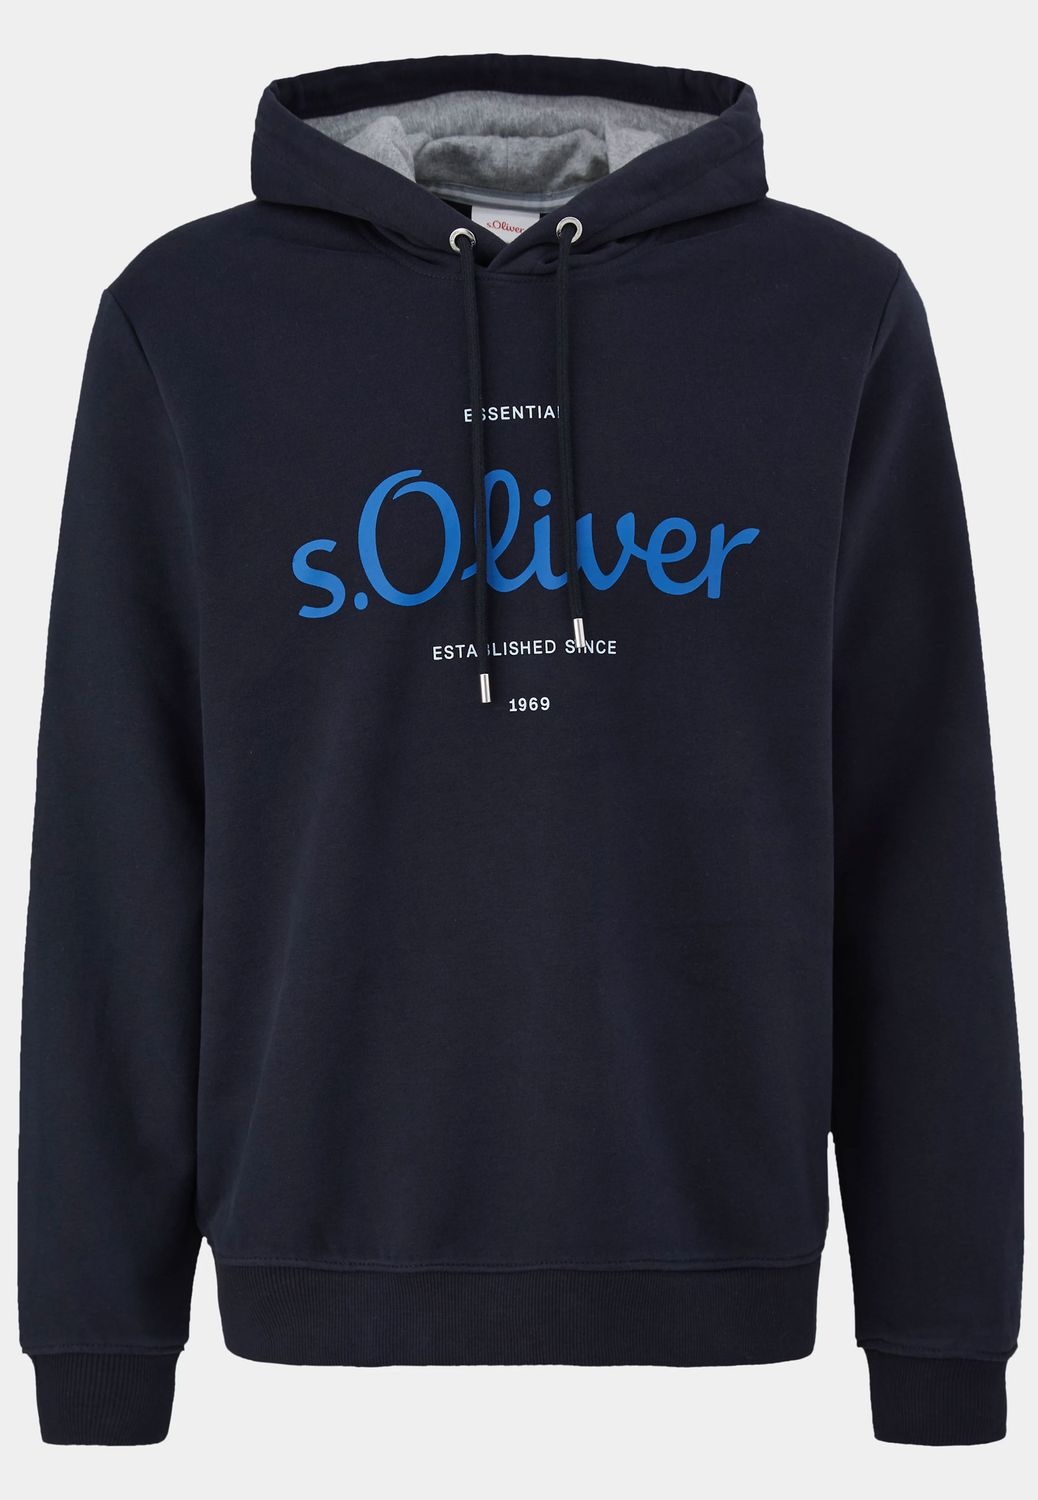 S.Oliver, Herren, Pullover, Herren Hoody, Blau, (M)